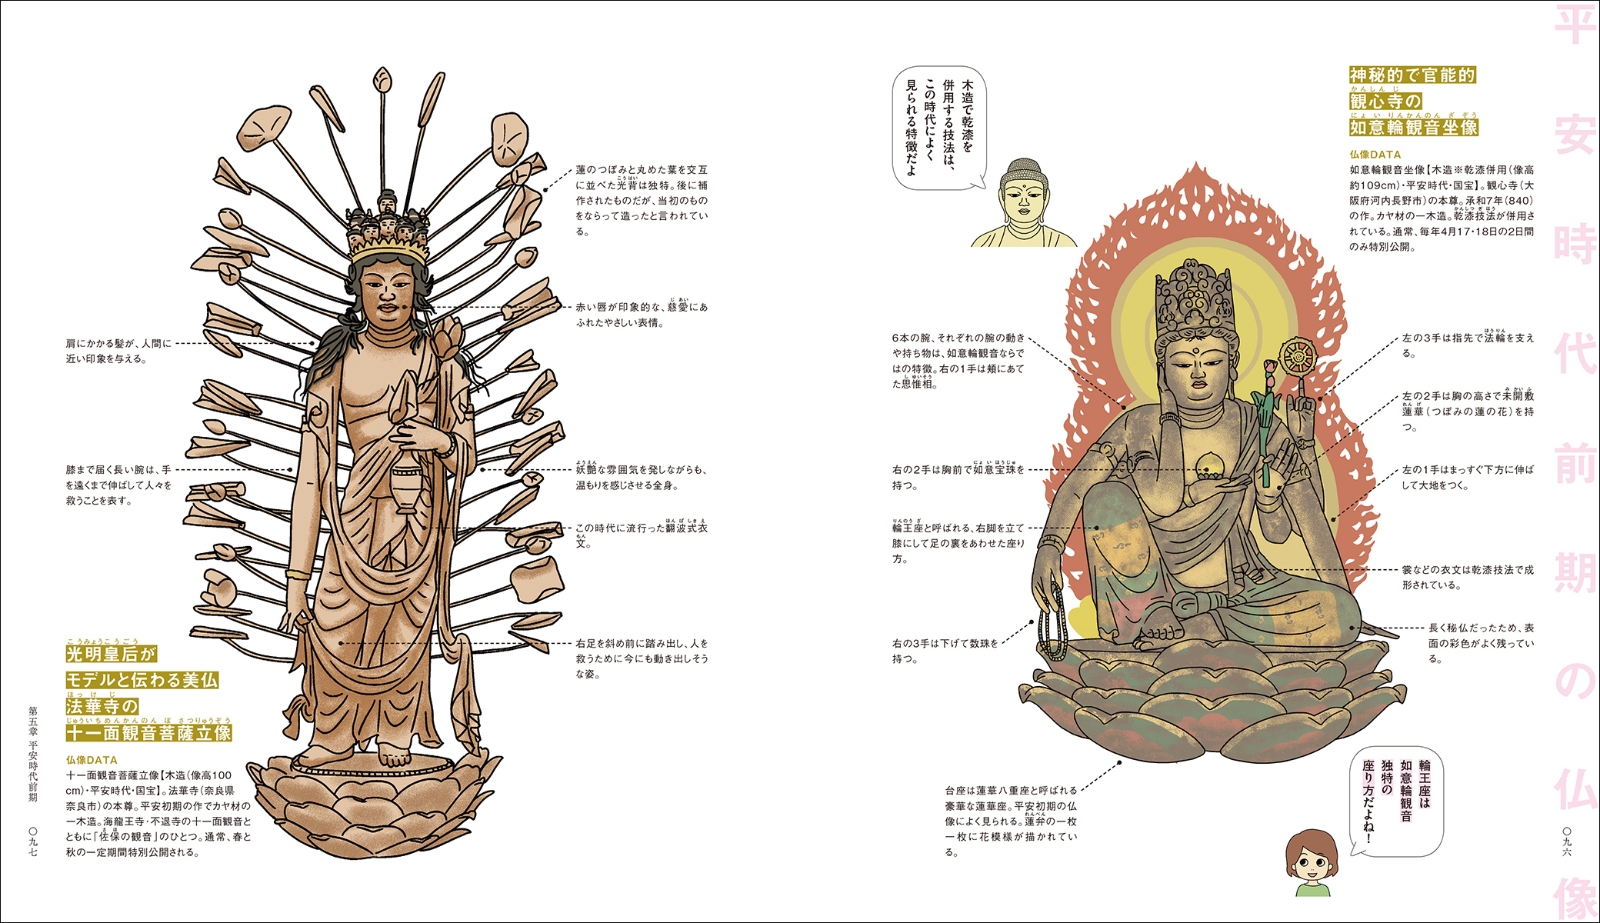 楽天ブックス みるみるつながる仏像図鑑 流れや関係が見えるから 歴史や仏教がわかる 何より 仏像 がもっとわかる 三宅 久雄 本